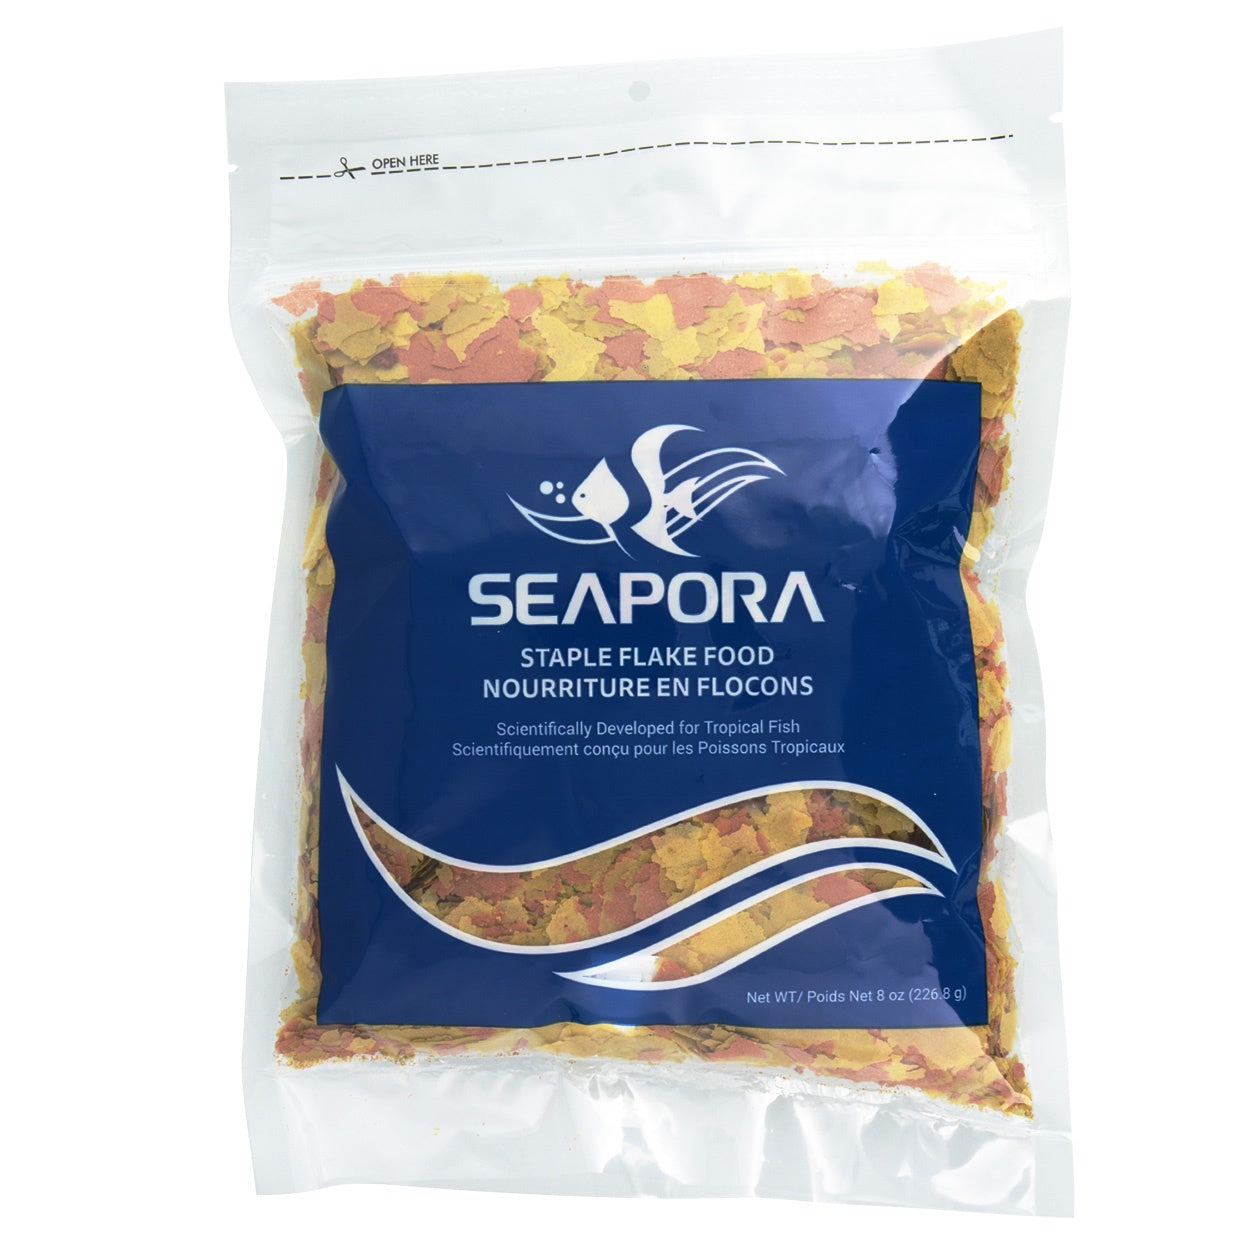 Seapora Staple Flake Food - 8 oz